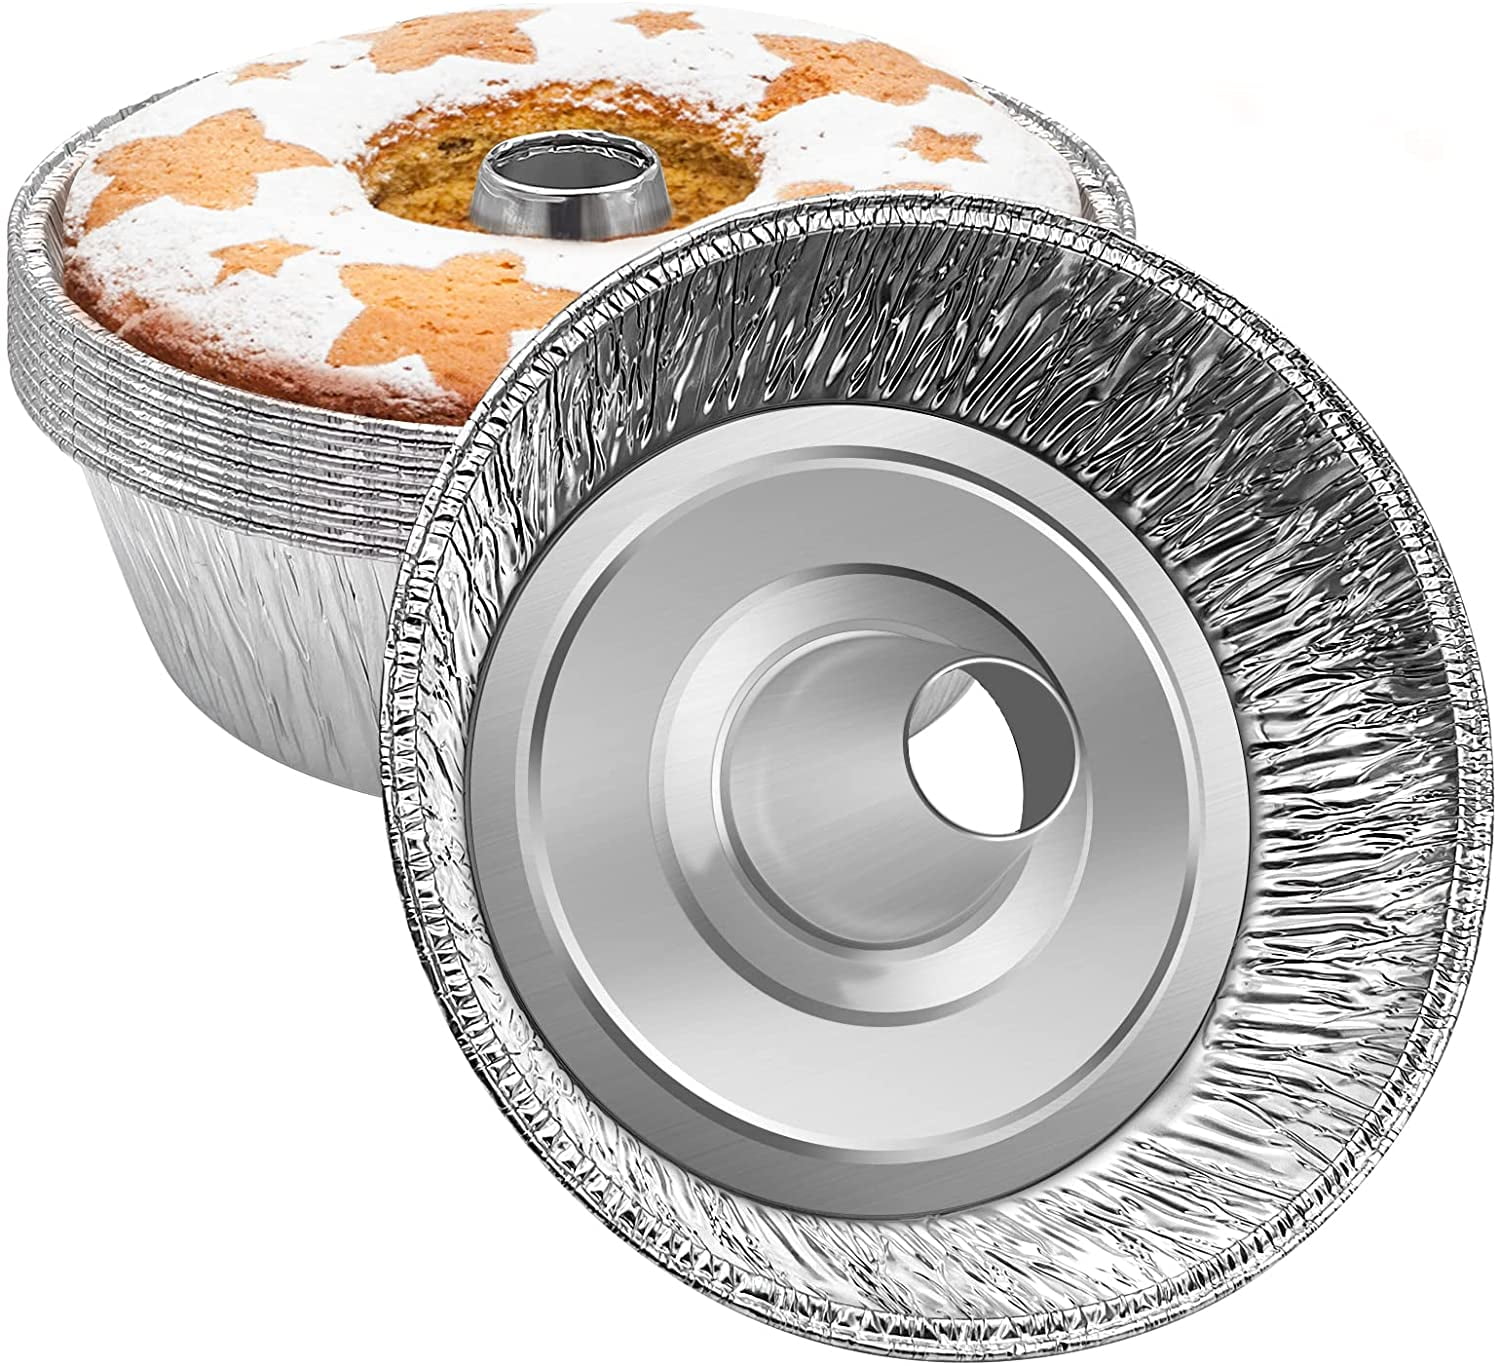 MontoPack Disposable Aluminum Foil Bundt Pans 10 Pack Cake